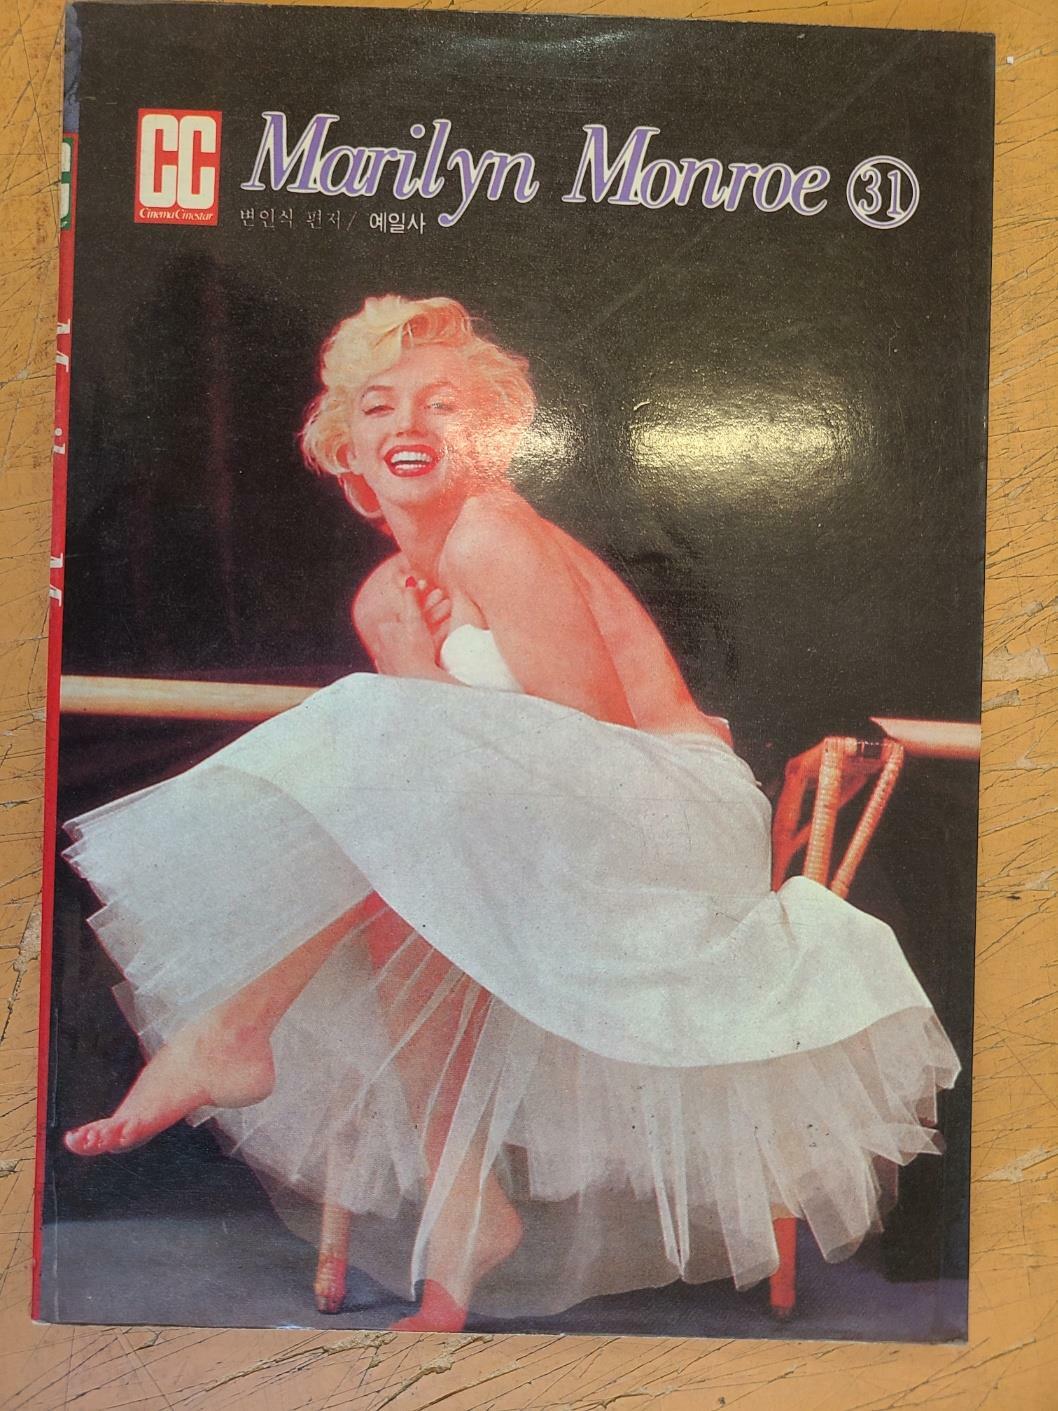 [중고] cc Marilyn Monroe 31(cc문고 희귀도서)